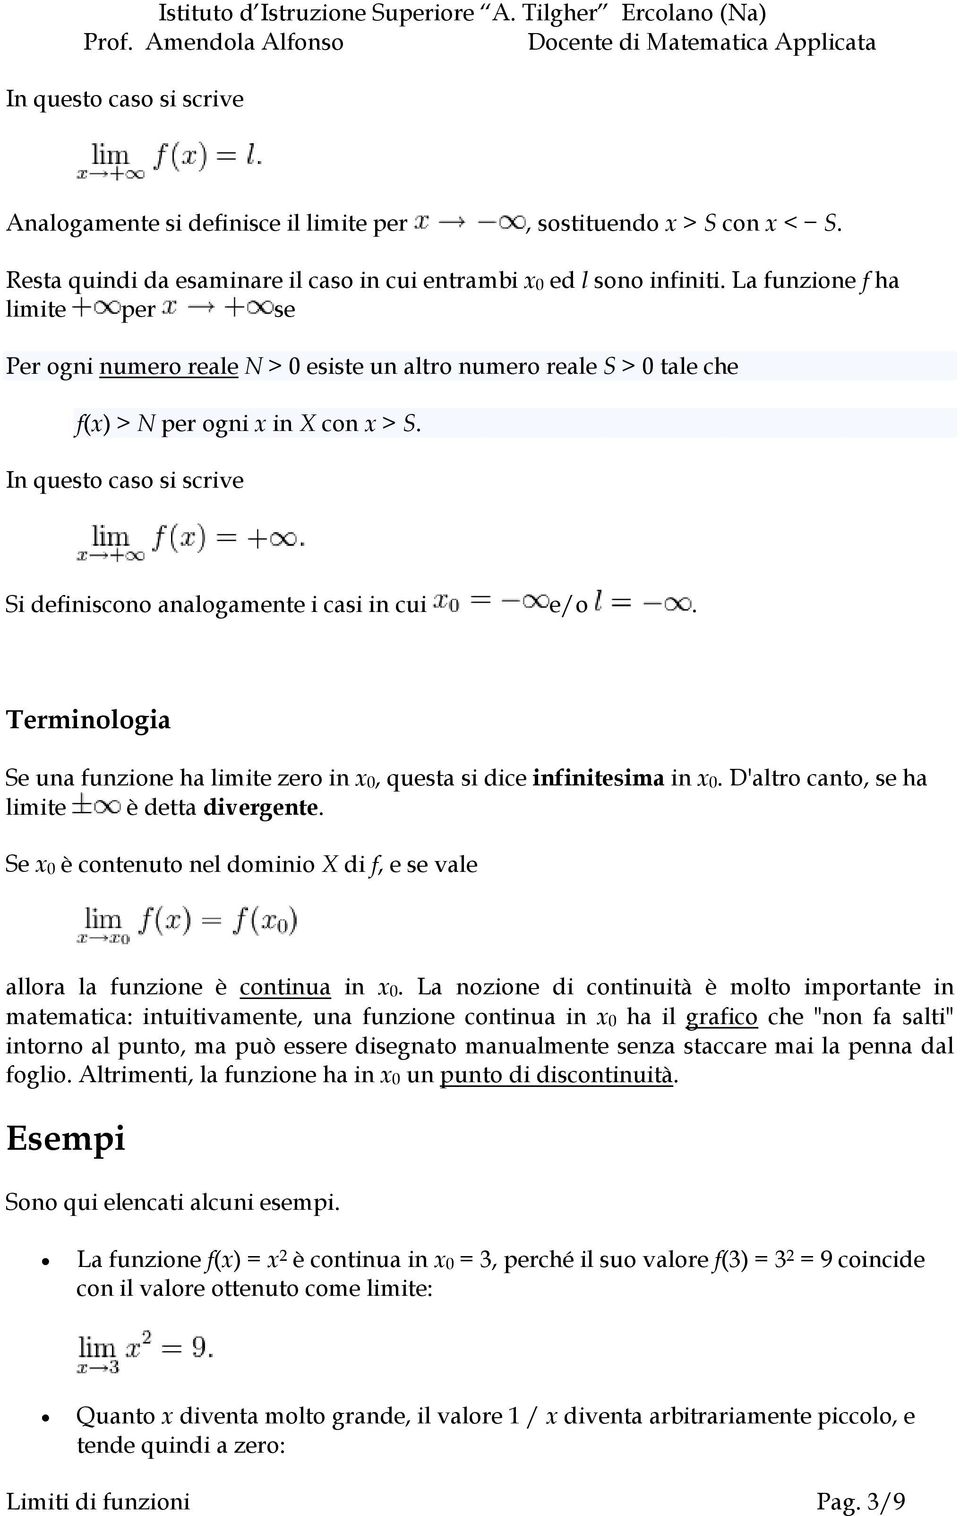 In questo caso si scrive Si definiscono analogamente i casi in cui e/o. Terminologia Se una funzione ha limite zero in x0, questa si dice infinitesima in x0.